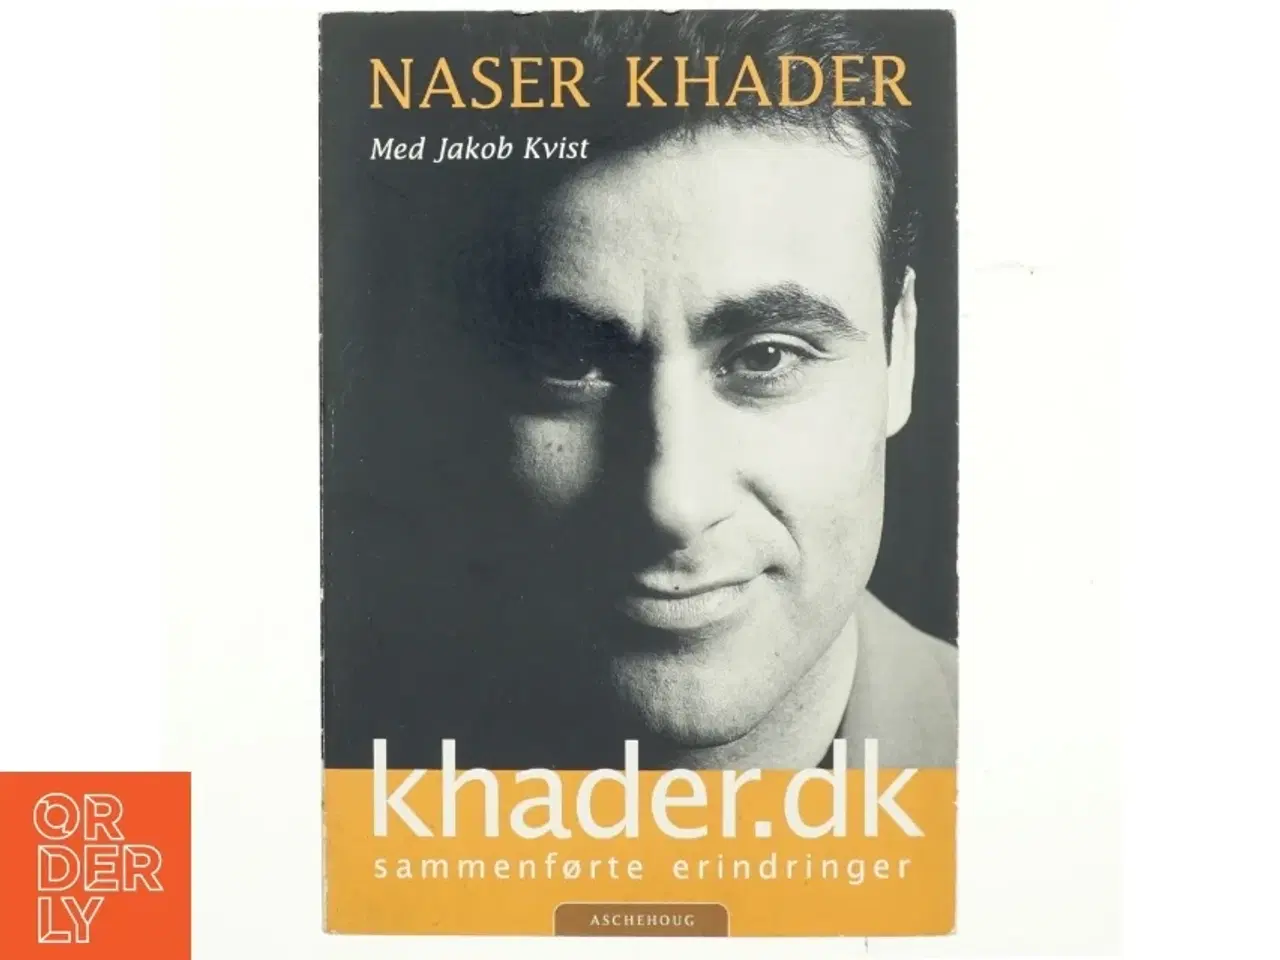 Billede 1 - Naser Khader, Khader.dk